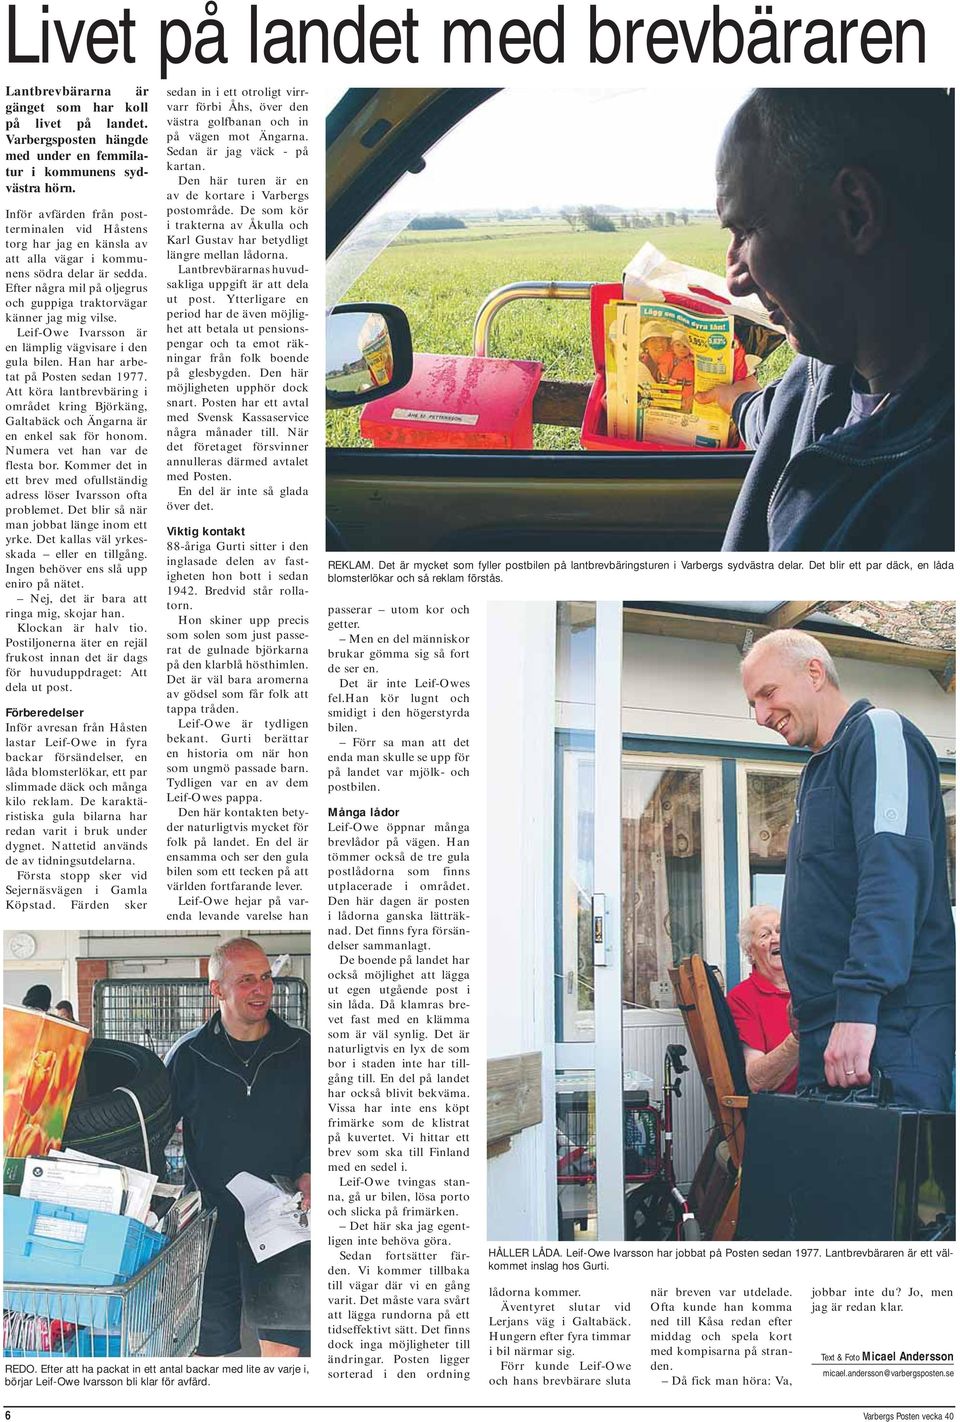 Leif-Owe Ivarsson är en lämplig vägvisare i den gula bilen. Han har arbetat på Posten sedan 1977. Att köra lantbrevbäring i området kring Björkäng, Galtabäck och Ängarna är en enkel sak för honom.